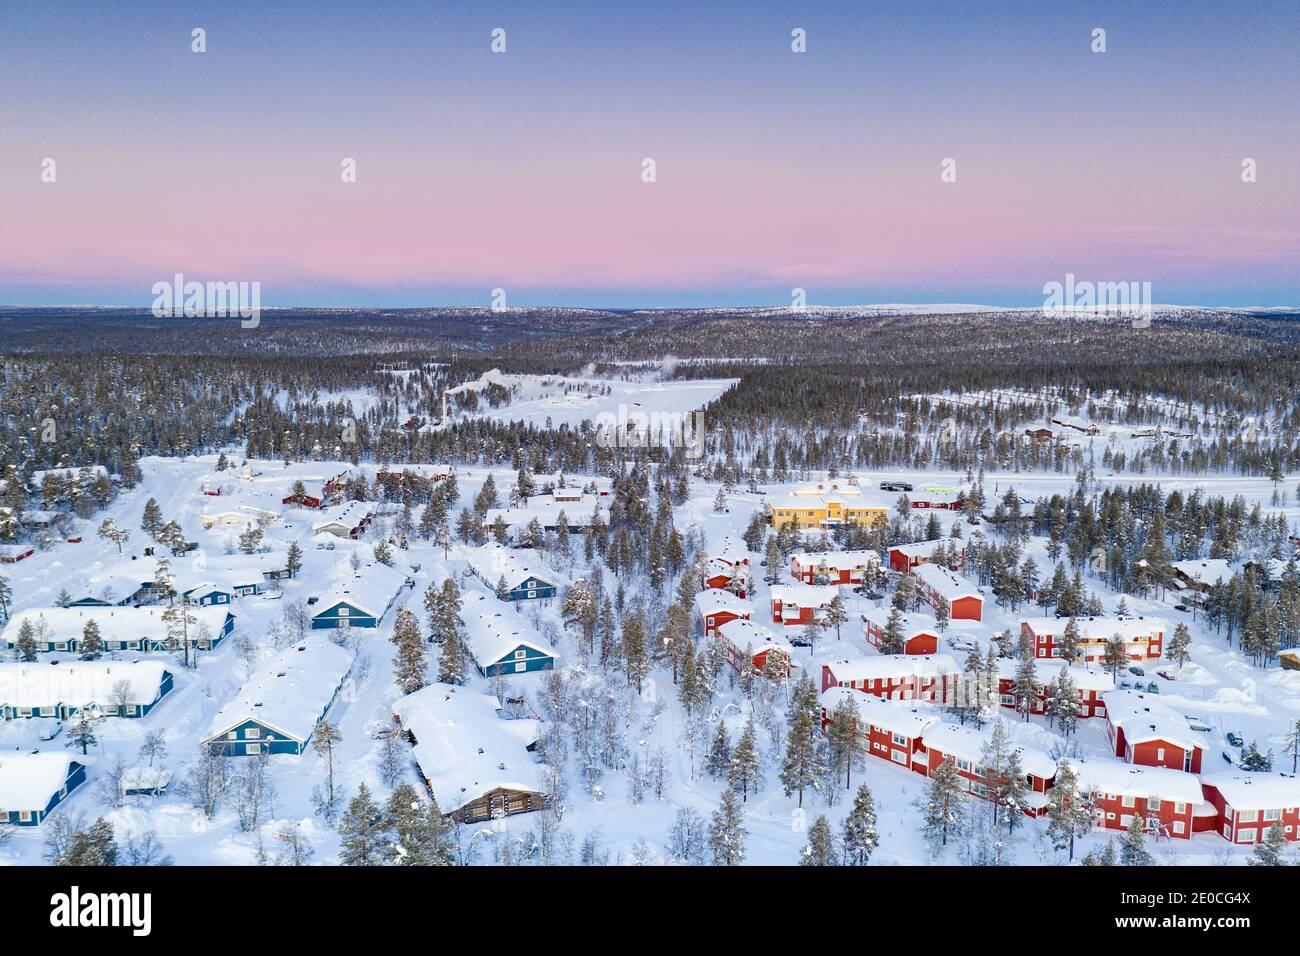 Vue aérienne de la forêt enneigée et de la station touristique d'hiver Saariselka au lever du soleil, Inari, Laponie, Finlande, Europe Banque D'Images